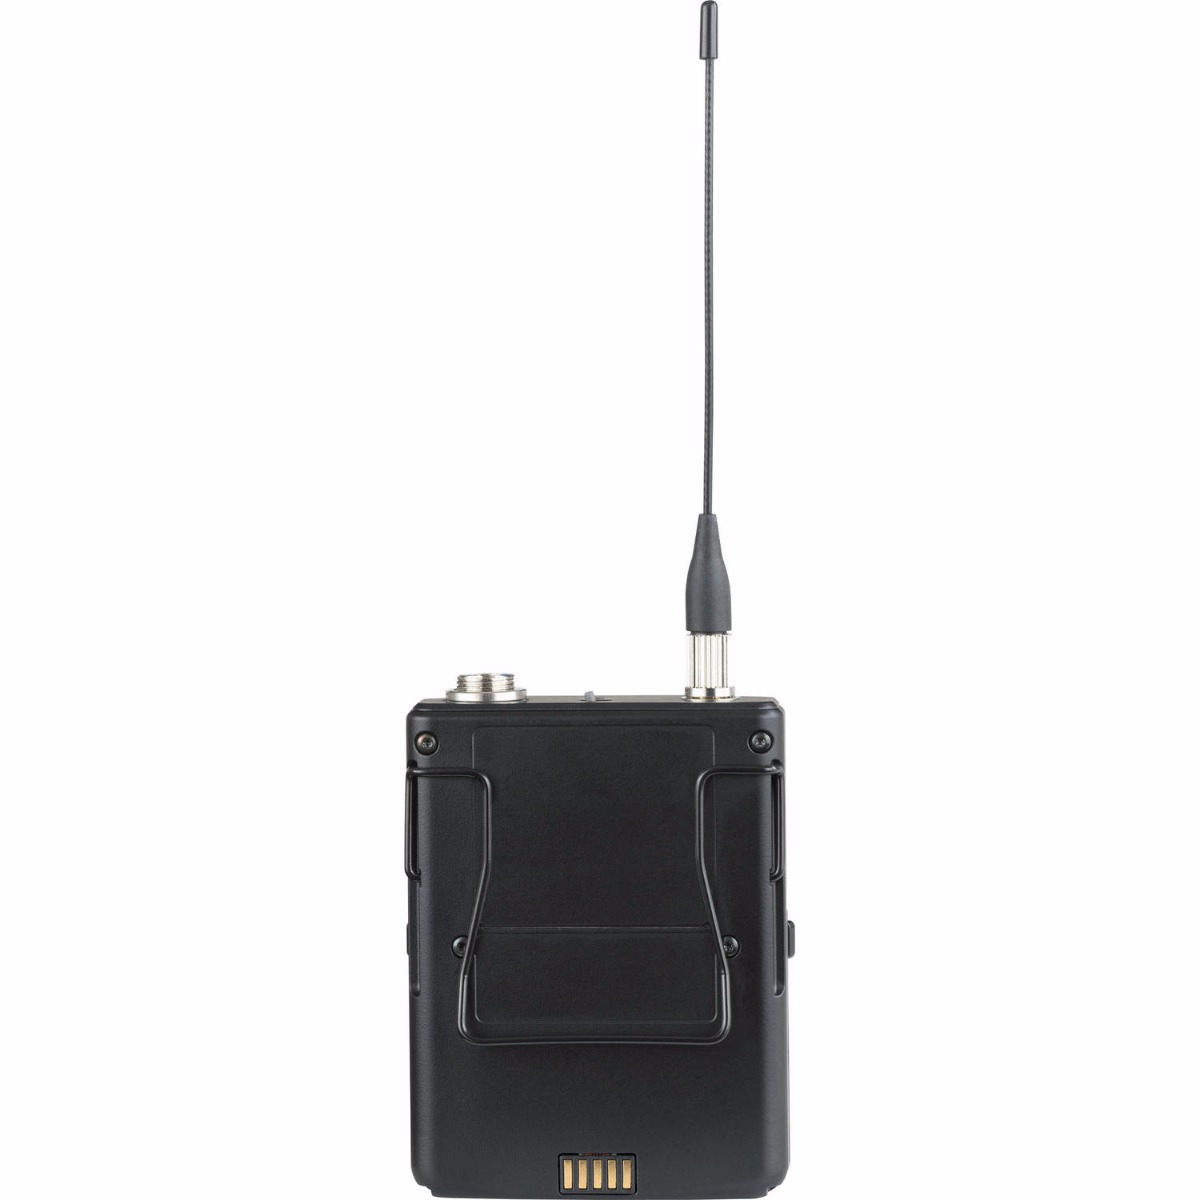 Shure ULXD1 - Wireless Bodypack Transmitter